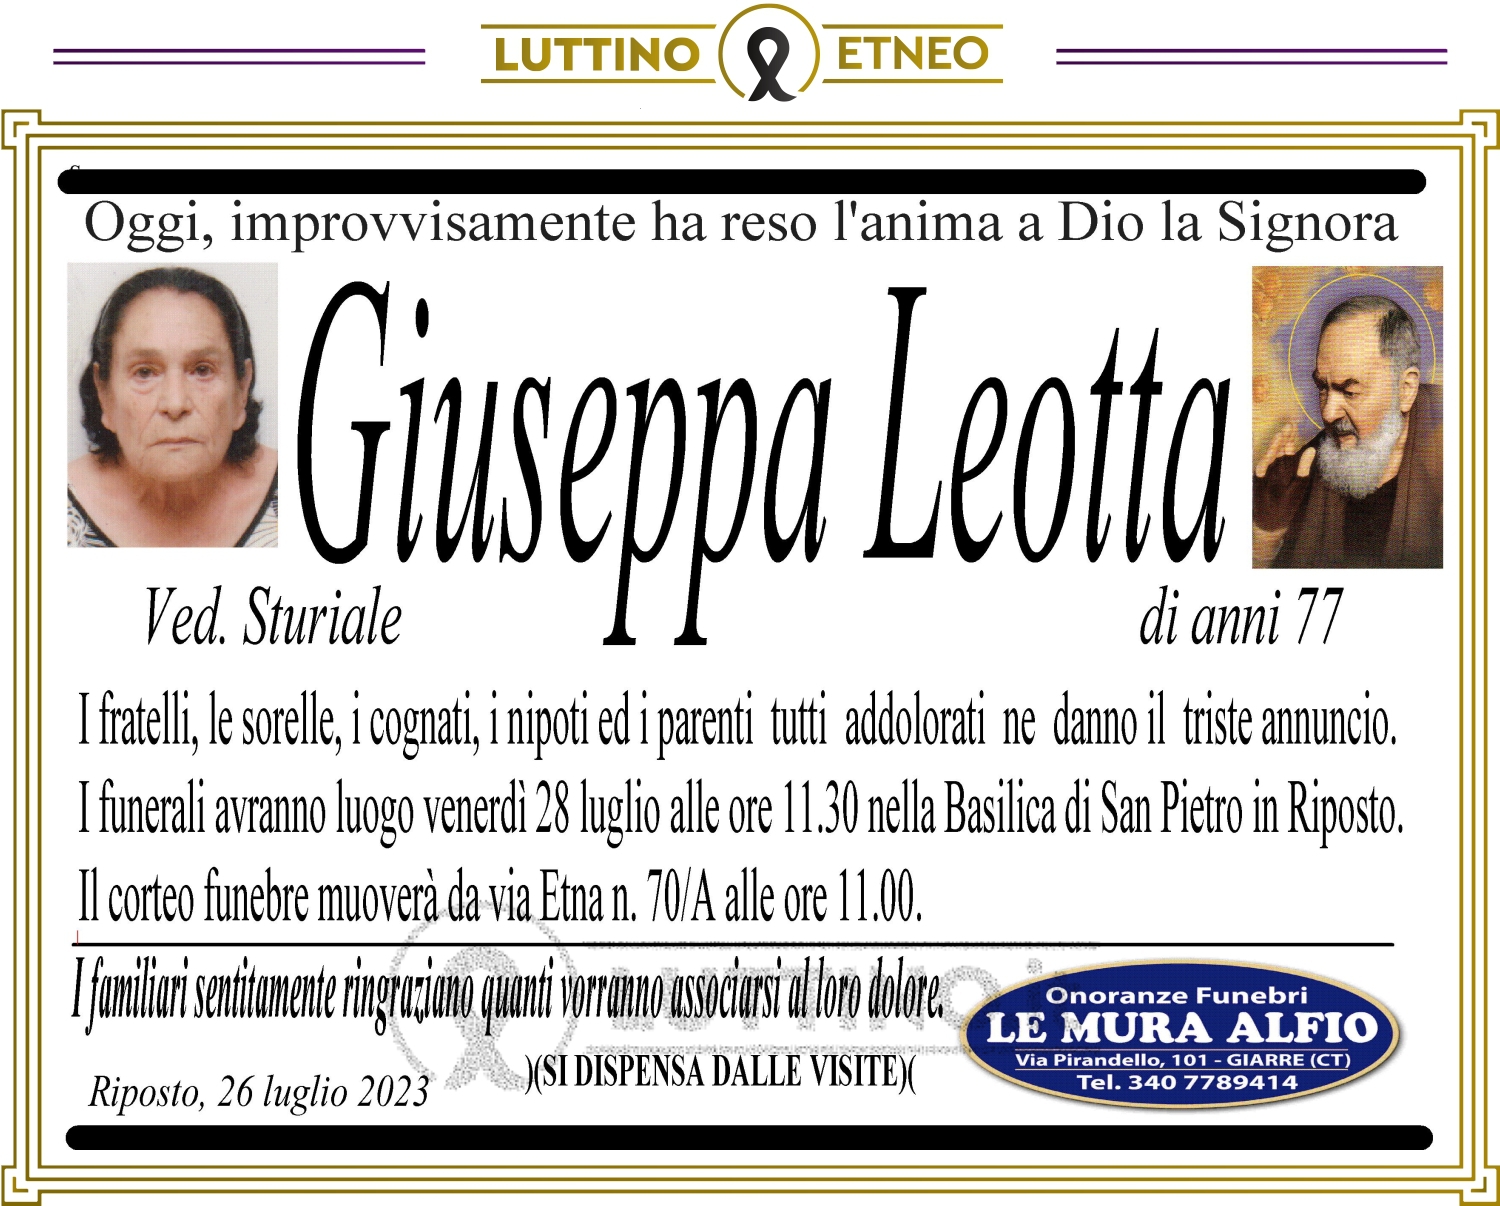 Giuseppa Leotta